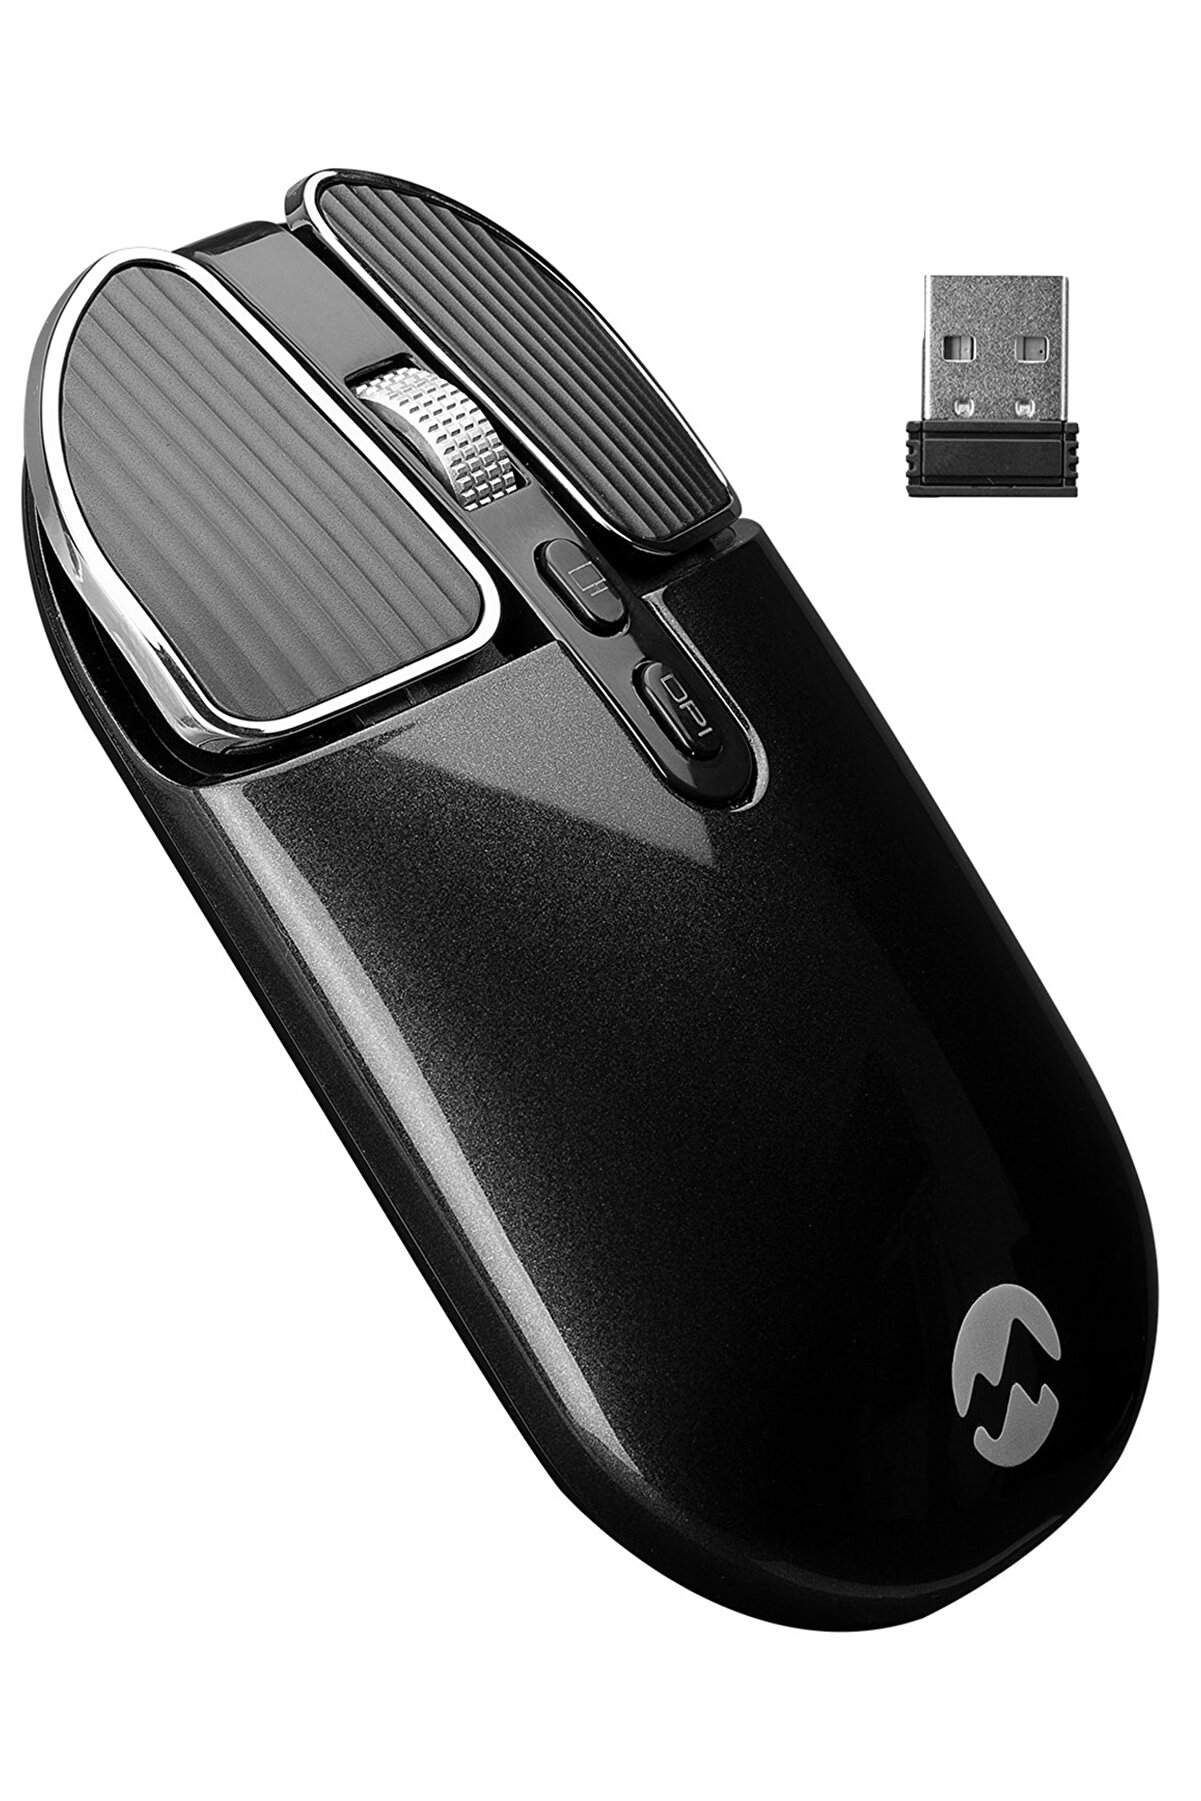 Everest Sm-619 Metalik Siyah 1600 Dpı 2.4 Ghz Süper Sessiz Şarj Edilebilir Premium Kablosuz Mouse